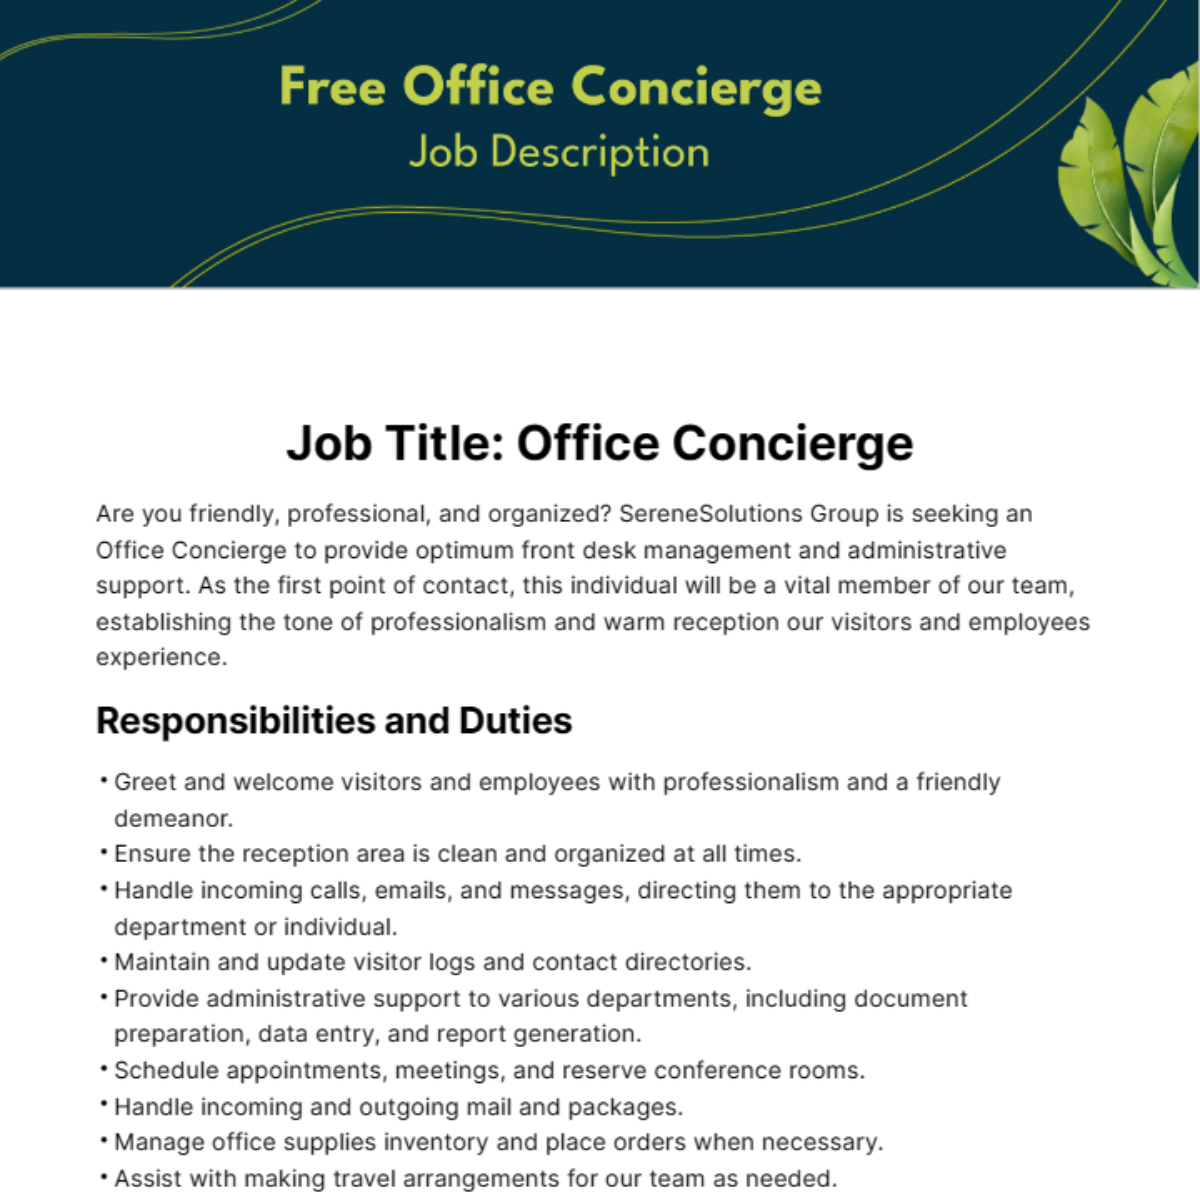 Free Office Concierge Job Description Template